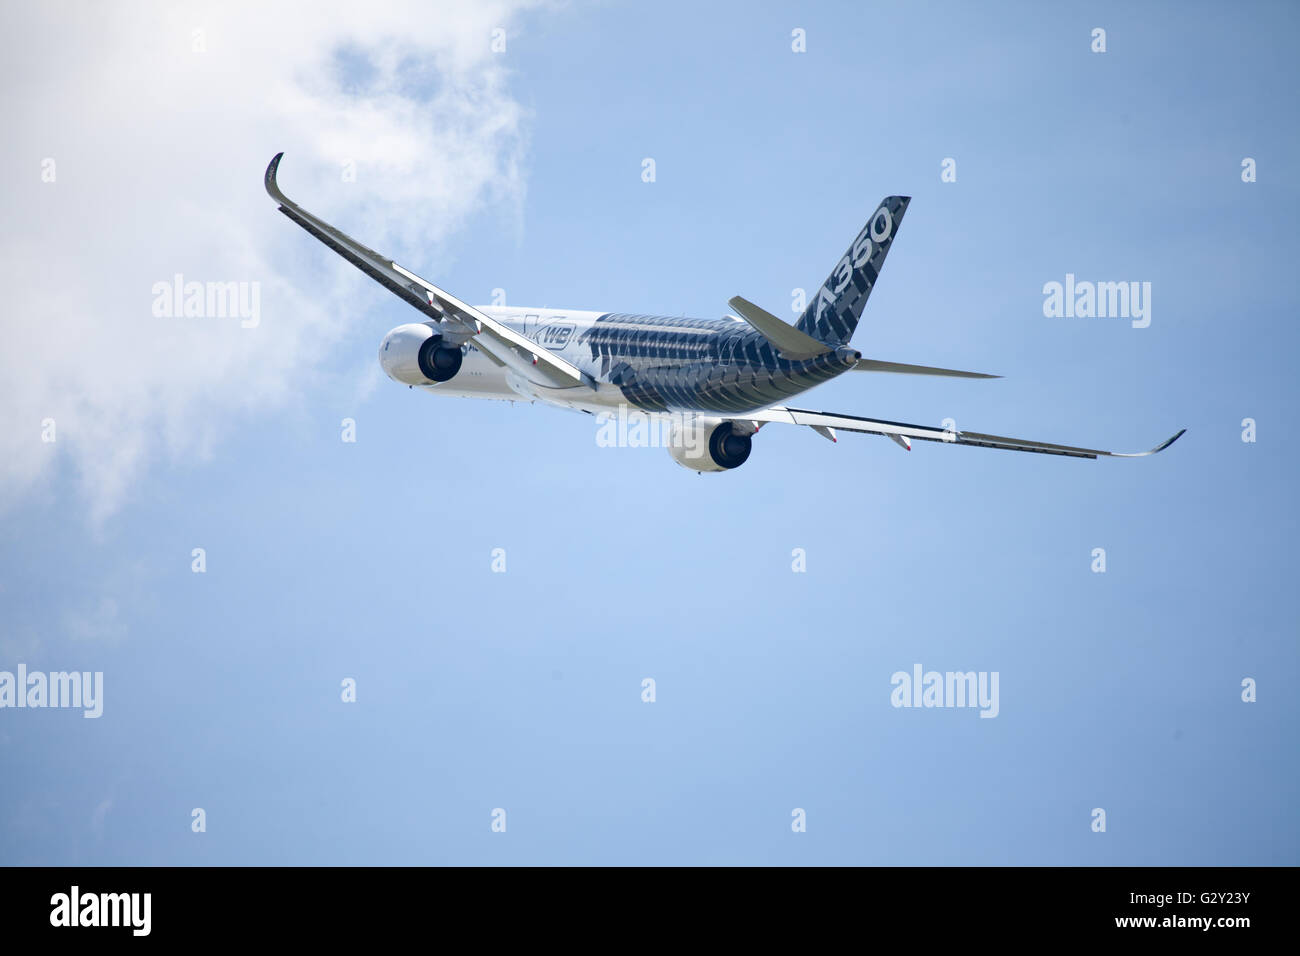 Berlín / ALEMANIA - JUNIO 3,2016: Airbus A 350 - 900 de avión en el aeropuerto de Berlín / Alemania el 3 de junio de 2016. Foto de stock